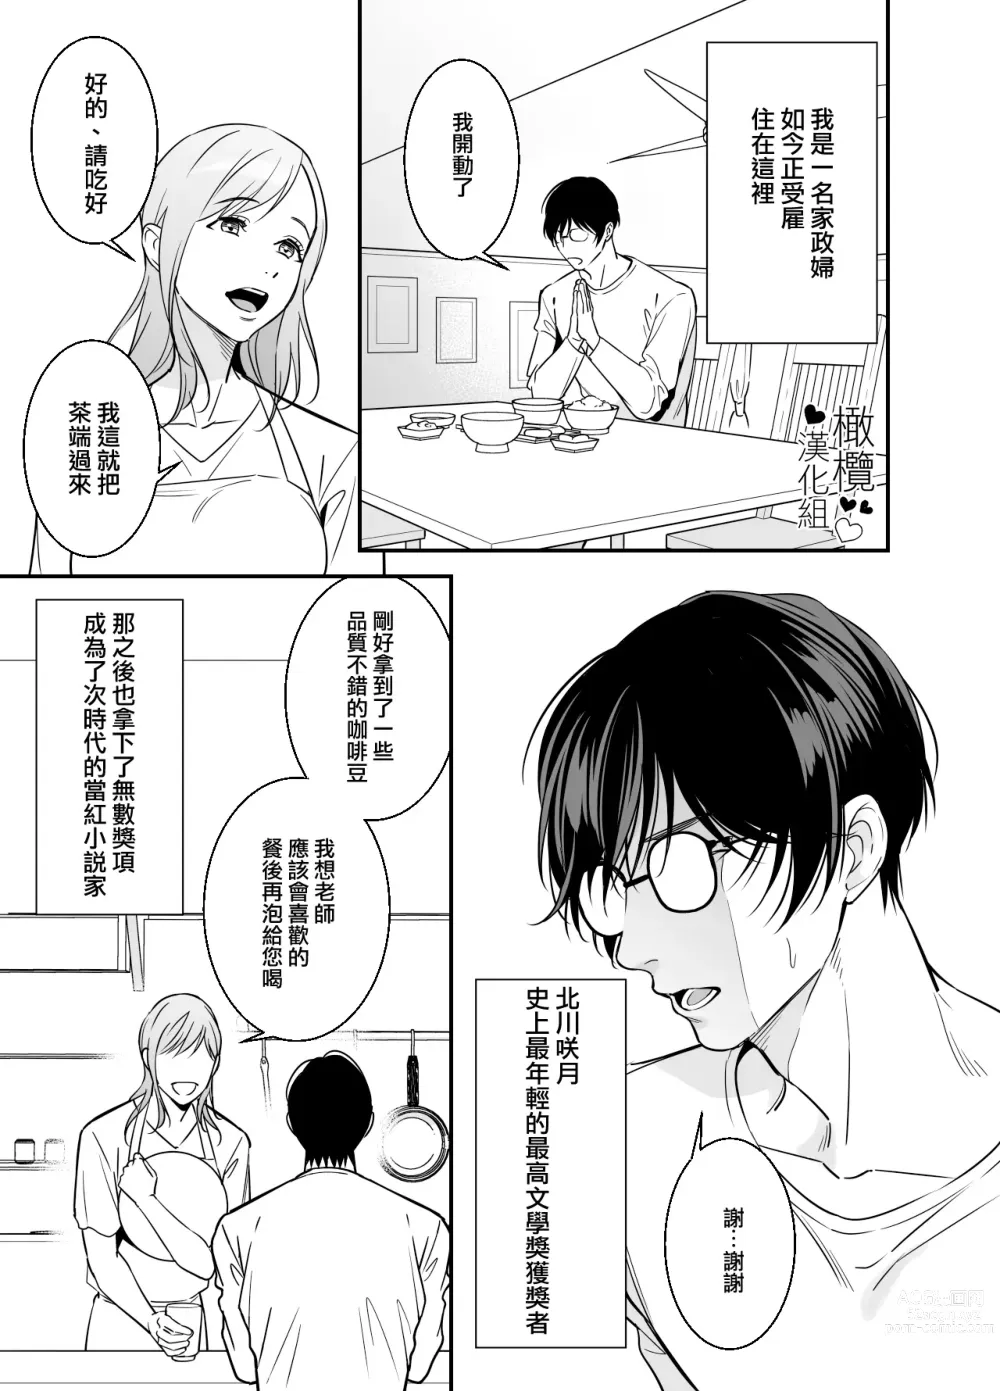 Page 4 of doujinshi 处男小说家和家政妇小姐